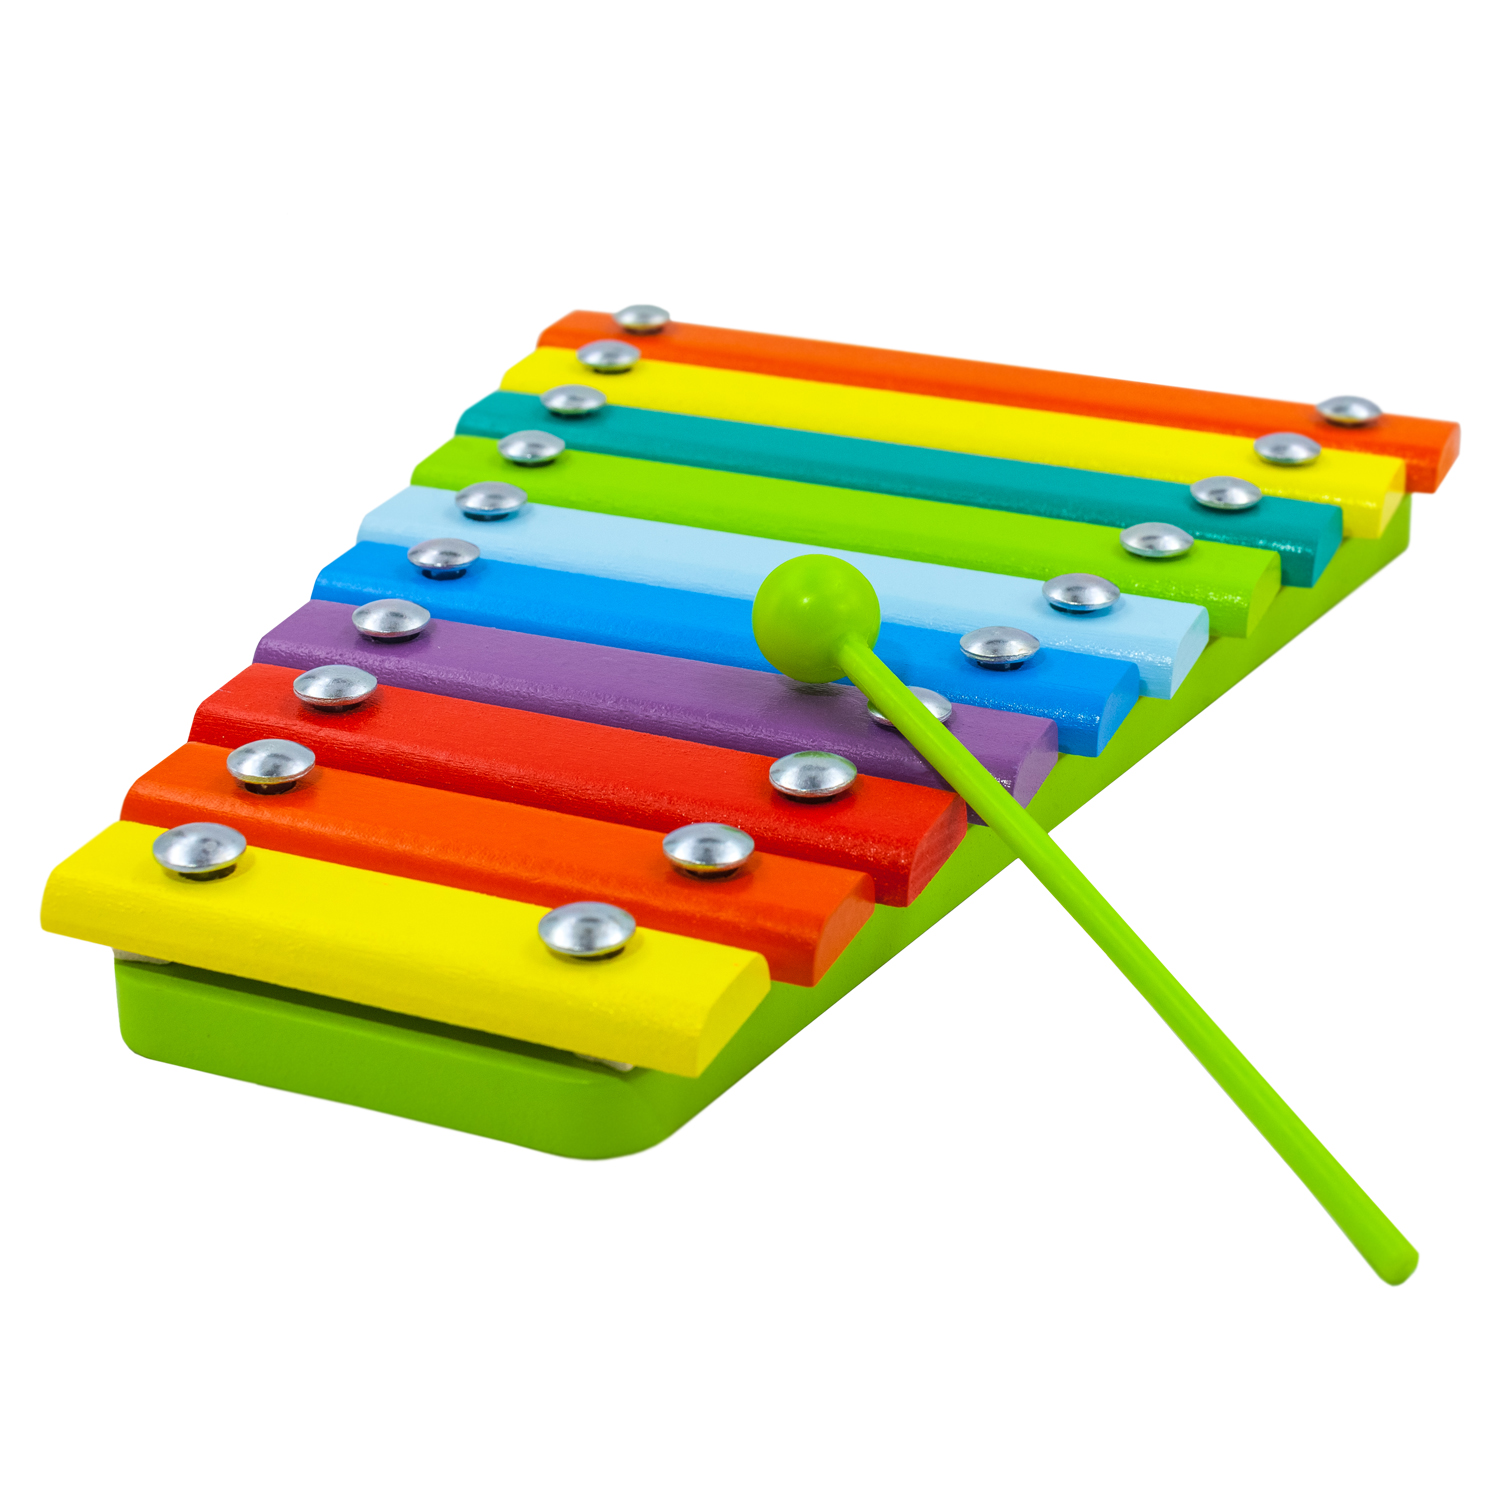 Ксилофон цветные ступеньки Алатойс 10 планок + гайд с играми - фото 11